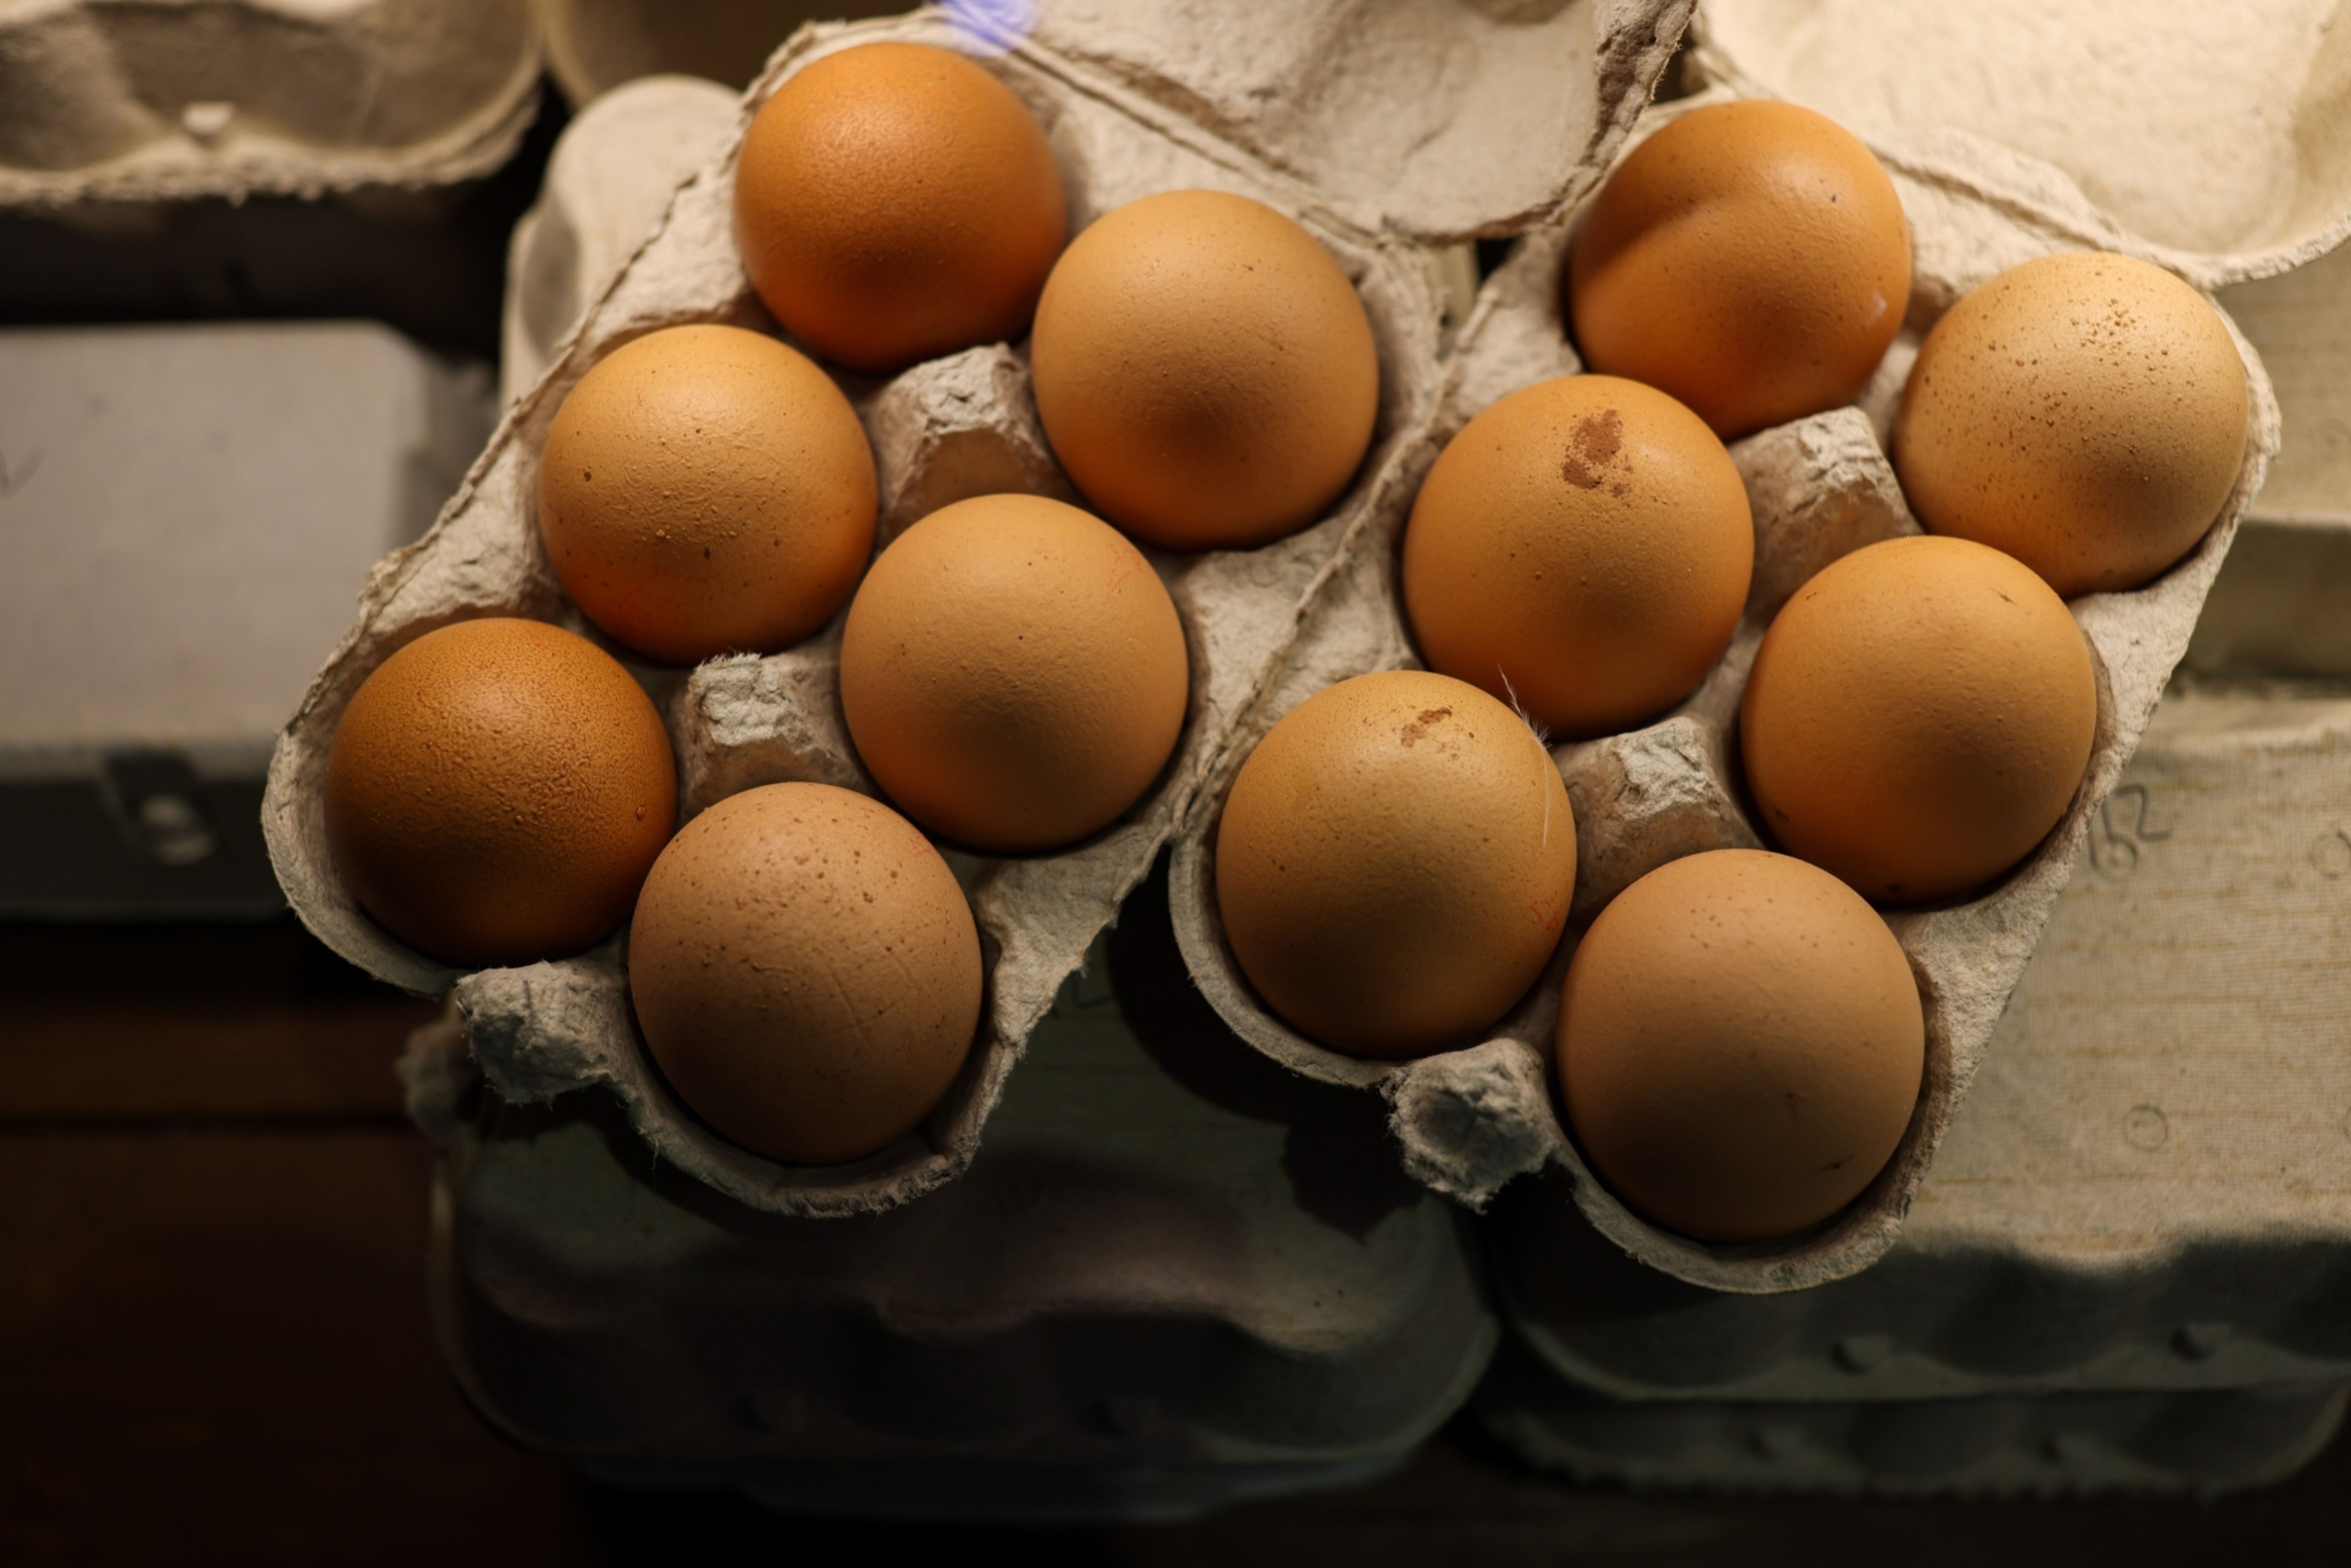 米国で鶏卵価格が1987年以来の大幅下落、消費者は安堵